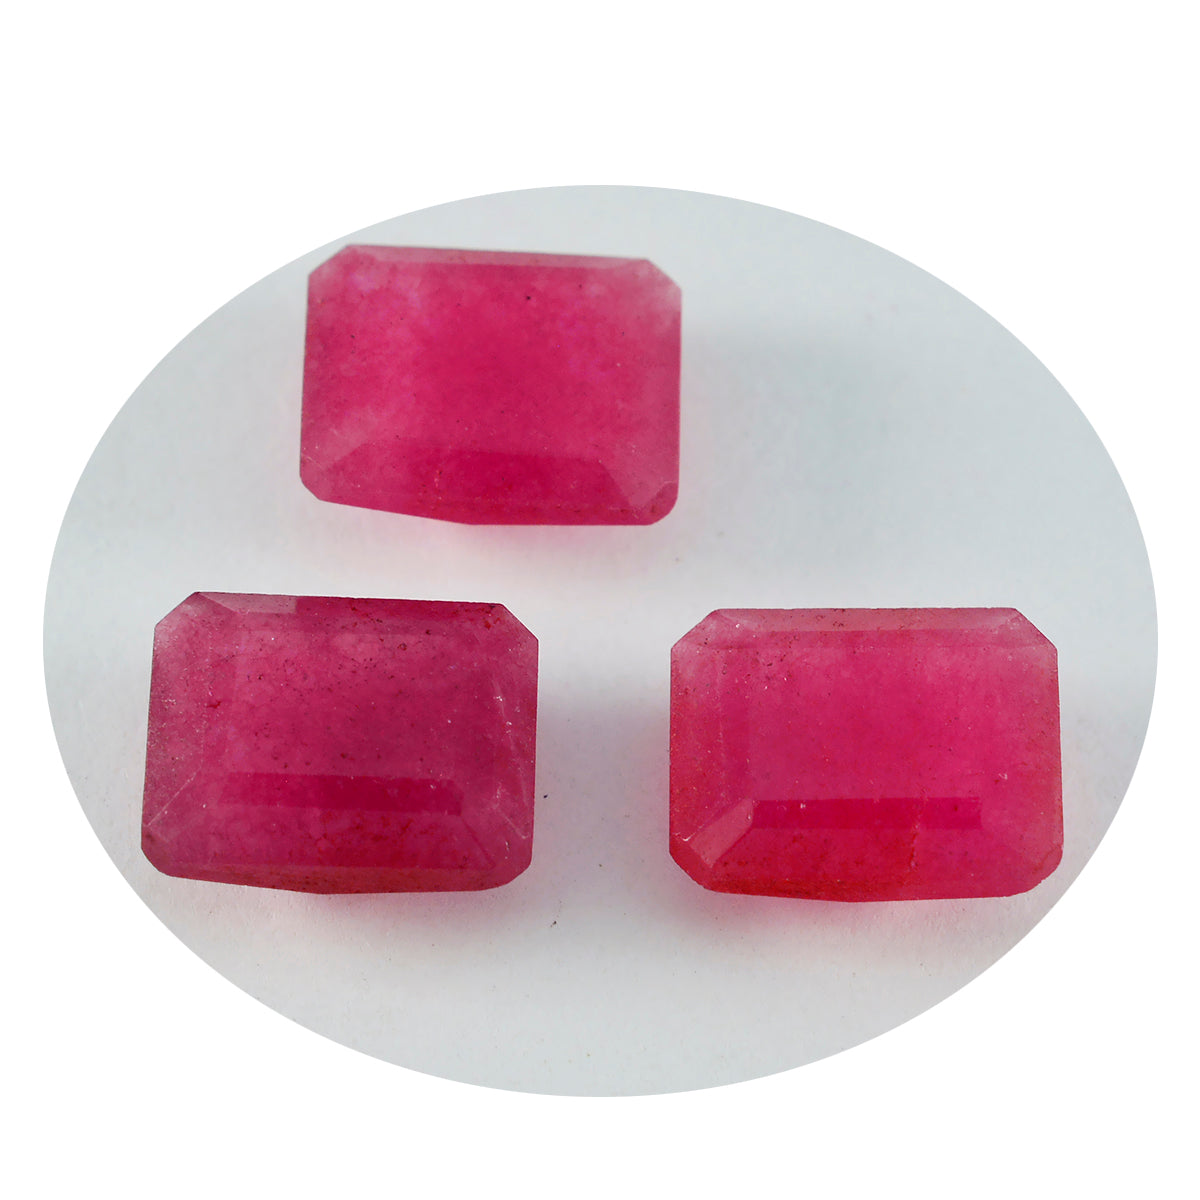 Riyogems 1PC echte rode jaspis gefacetteerd 6x8 mm achthoekige vorm steen van goede kwaliteit